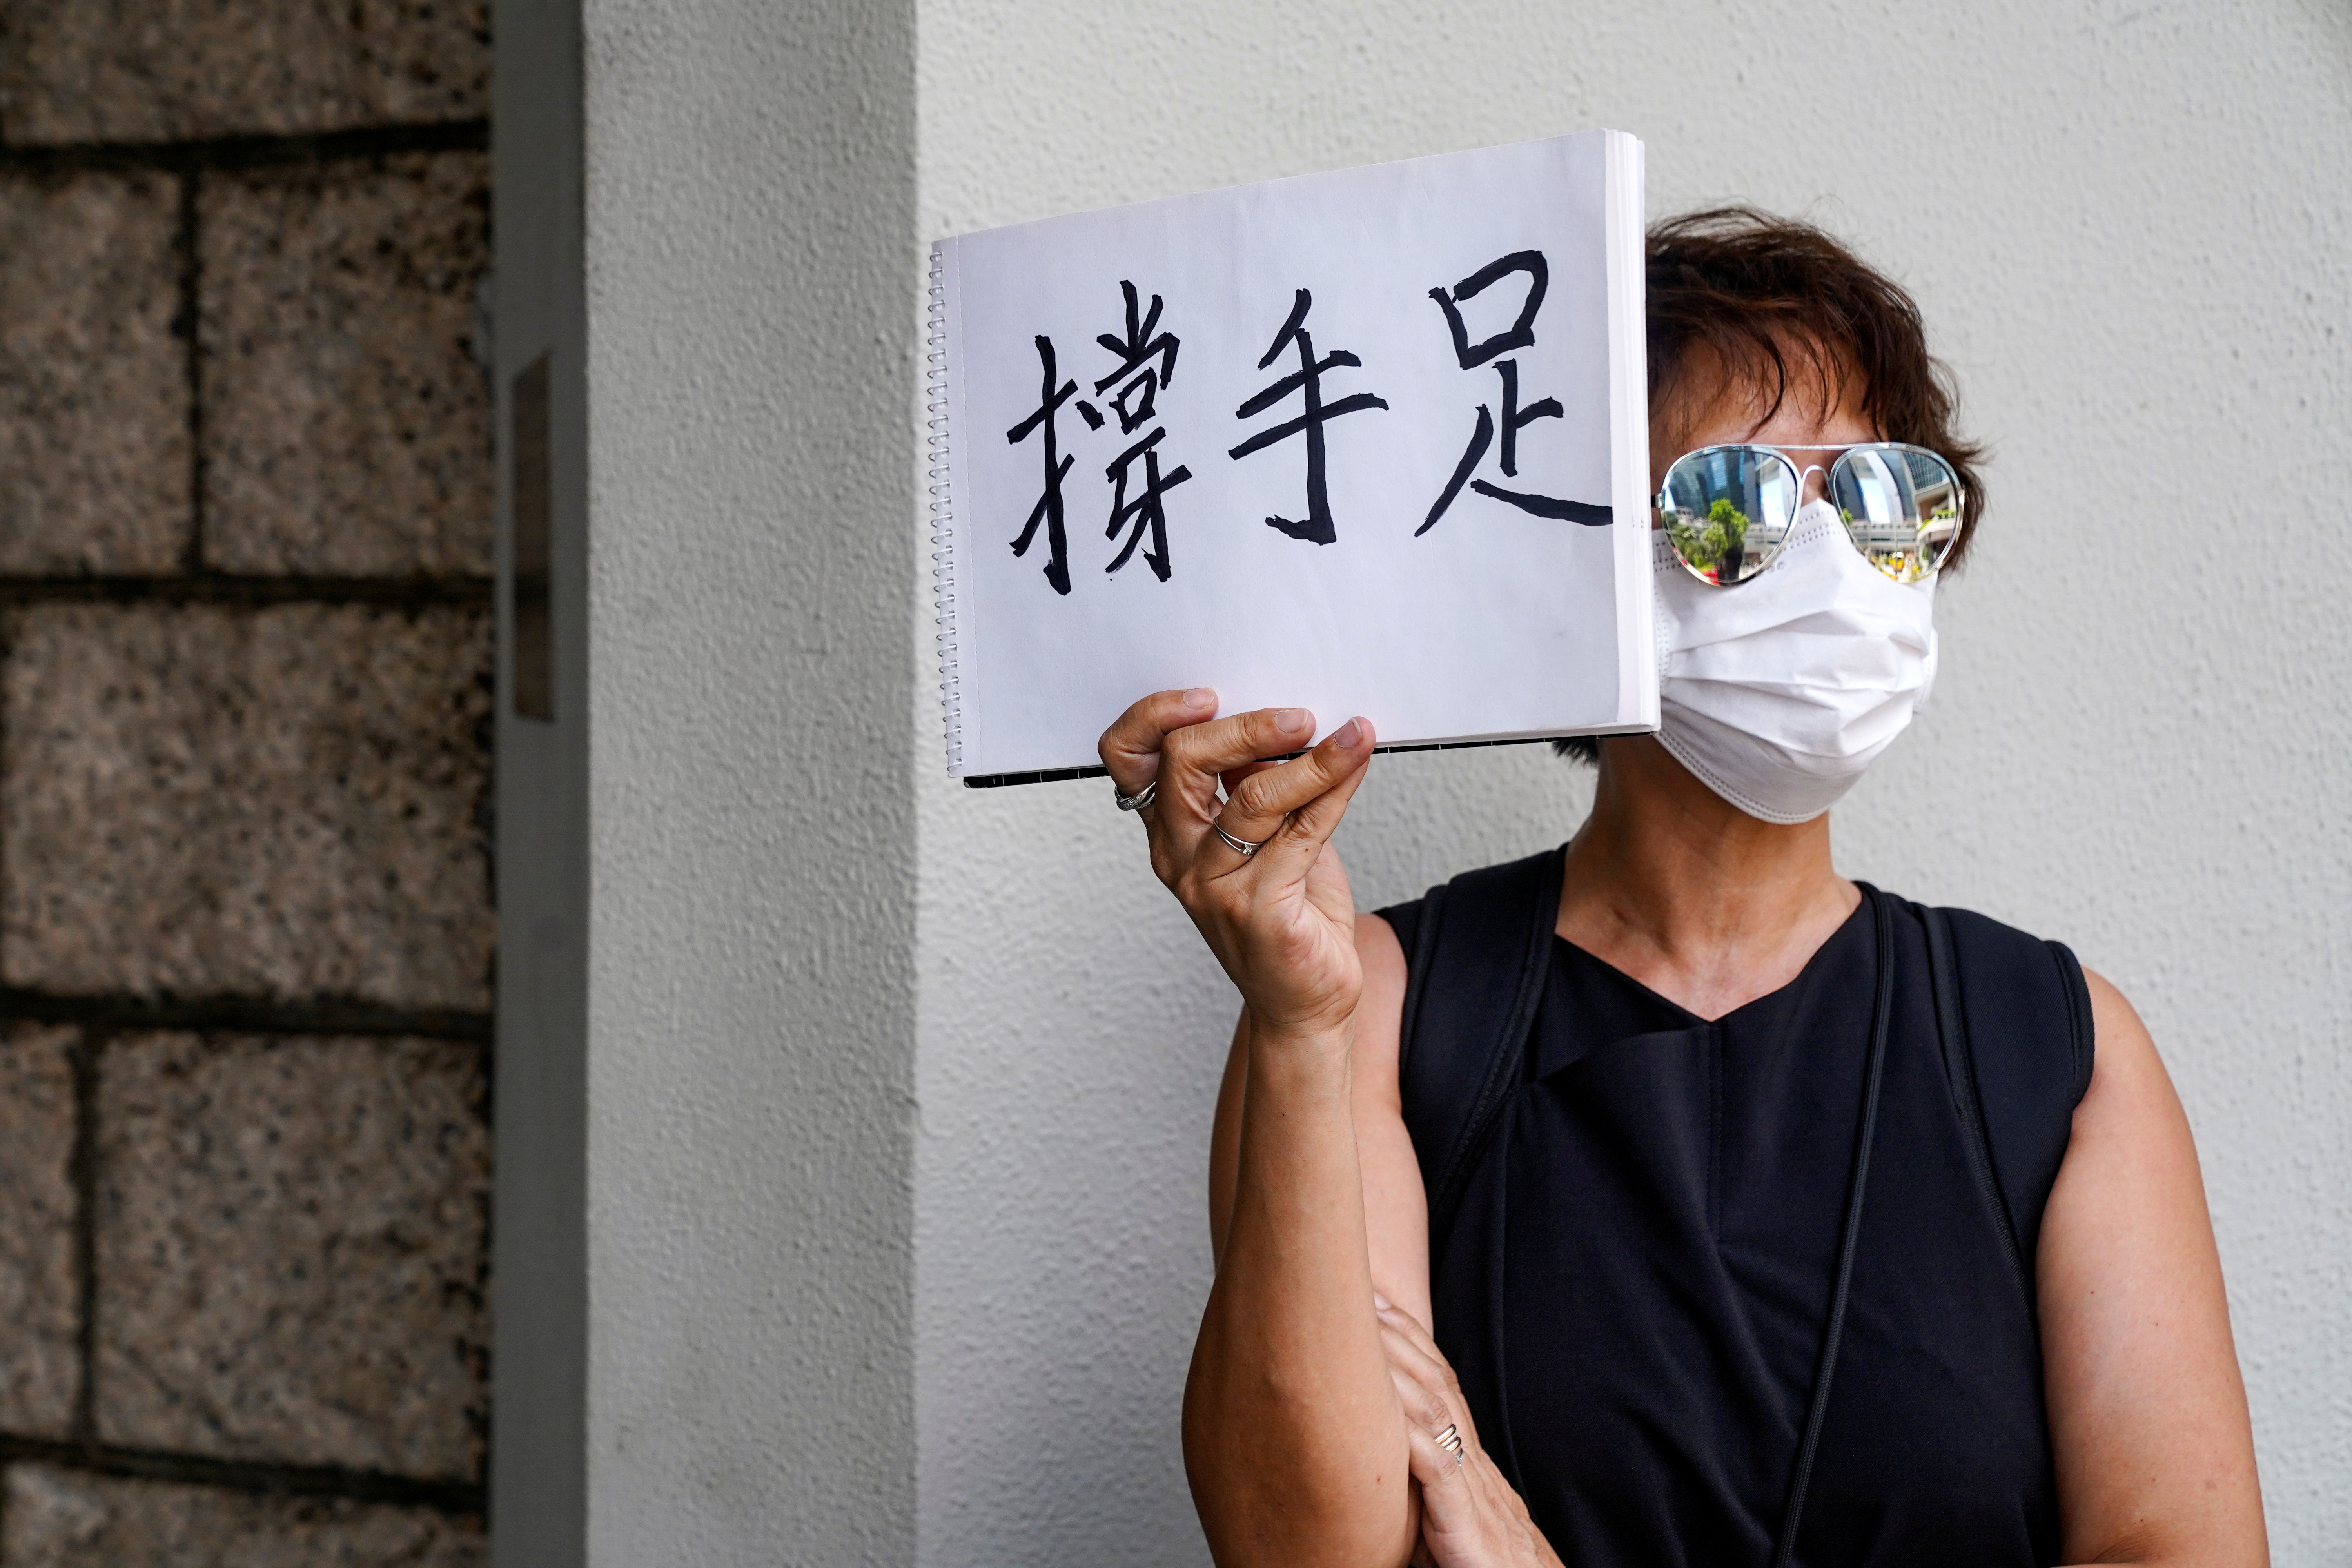 Una mujer sostiene un cartel con la frase "apoyo de hermano" en favor del activista pordemocracia Tong Ying-kit

